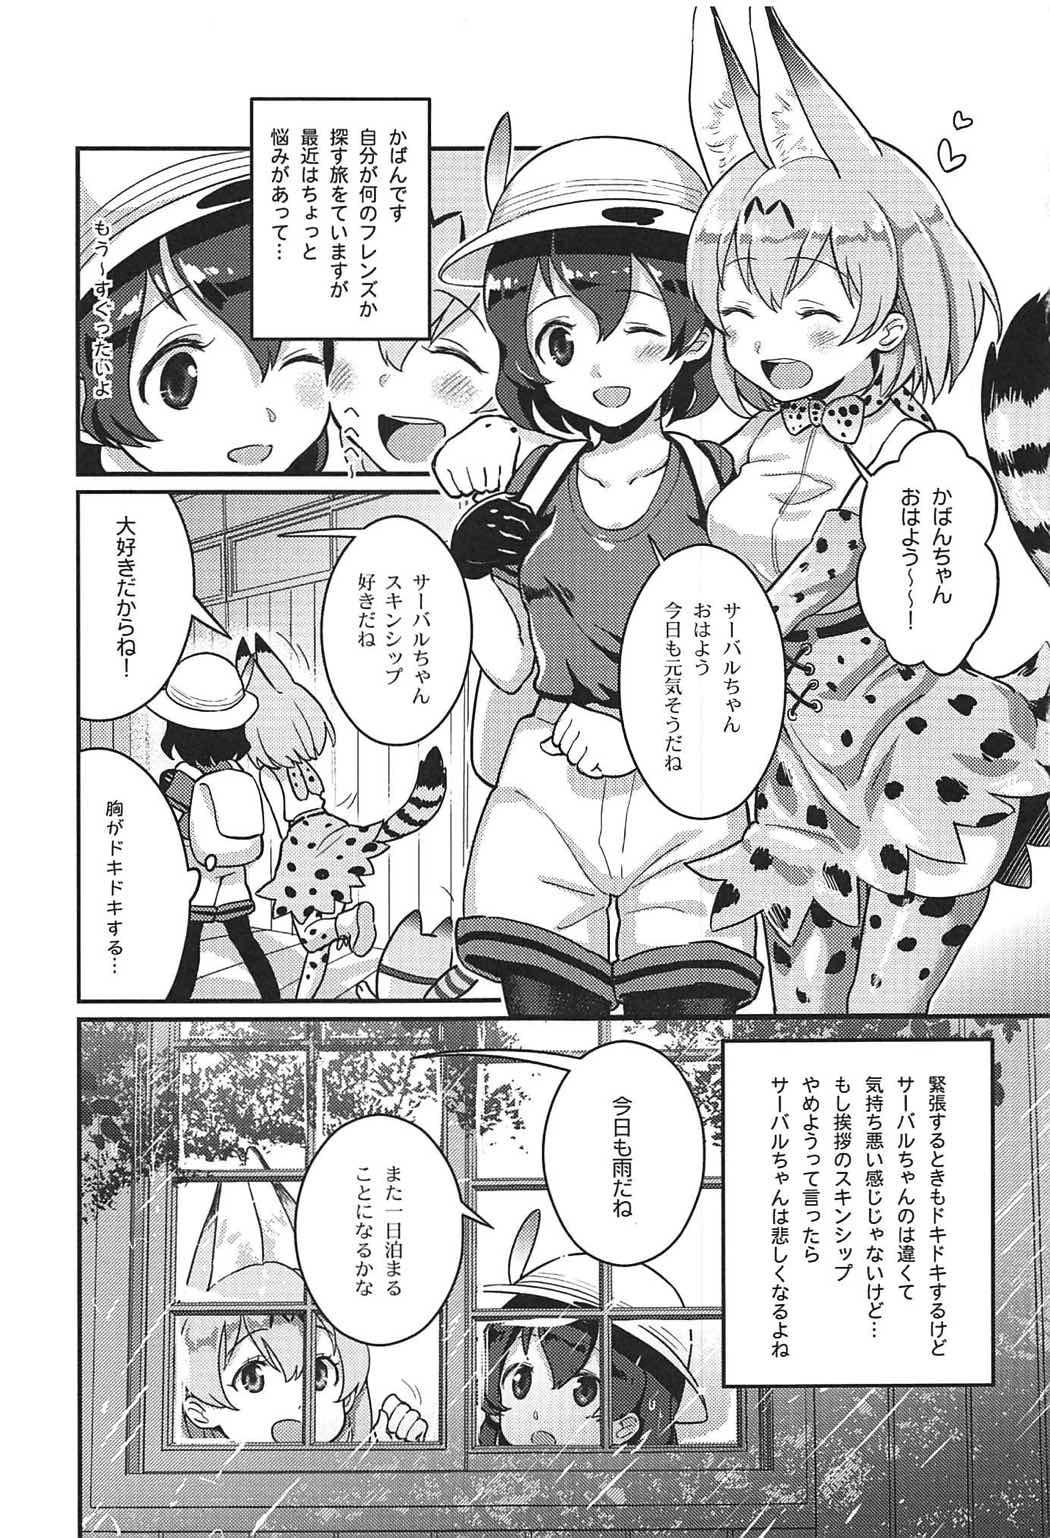 Jerking Off Daisuki ni Kimatteru!! - Kemono friends Creampies - Page 2